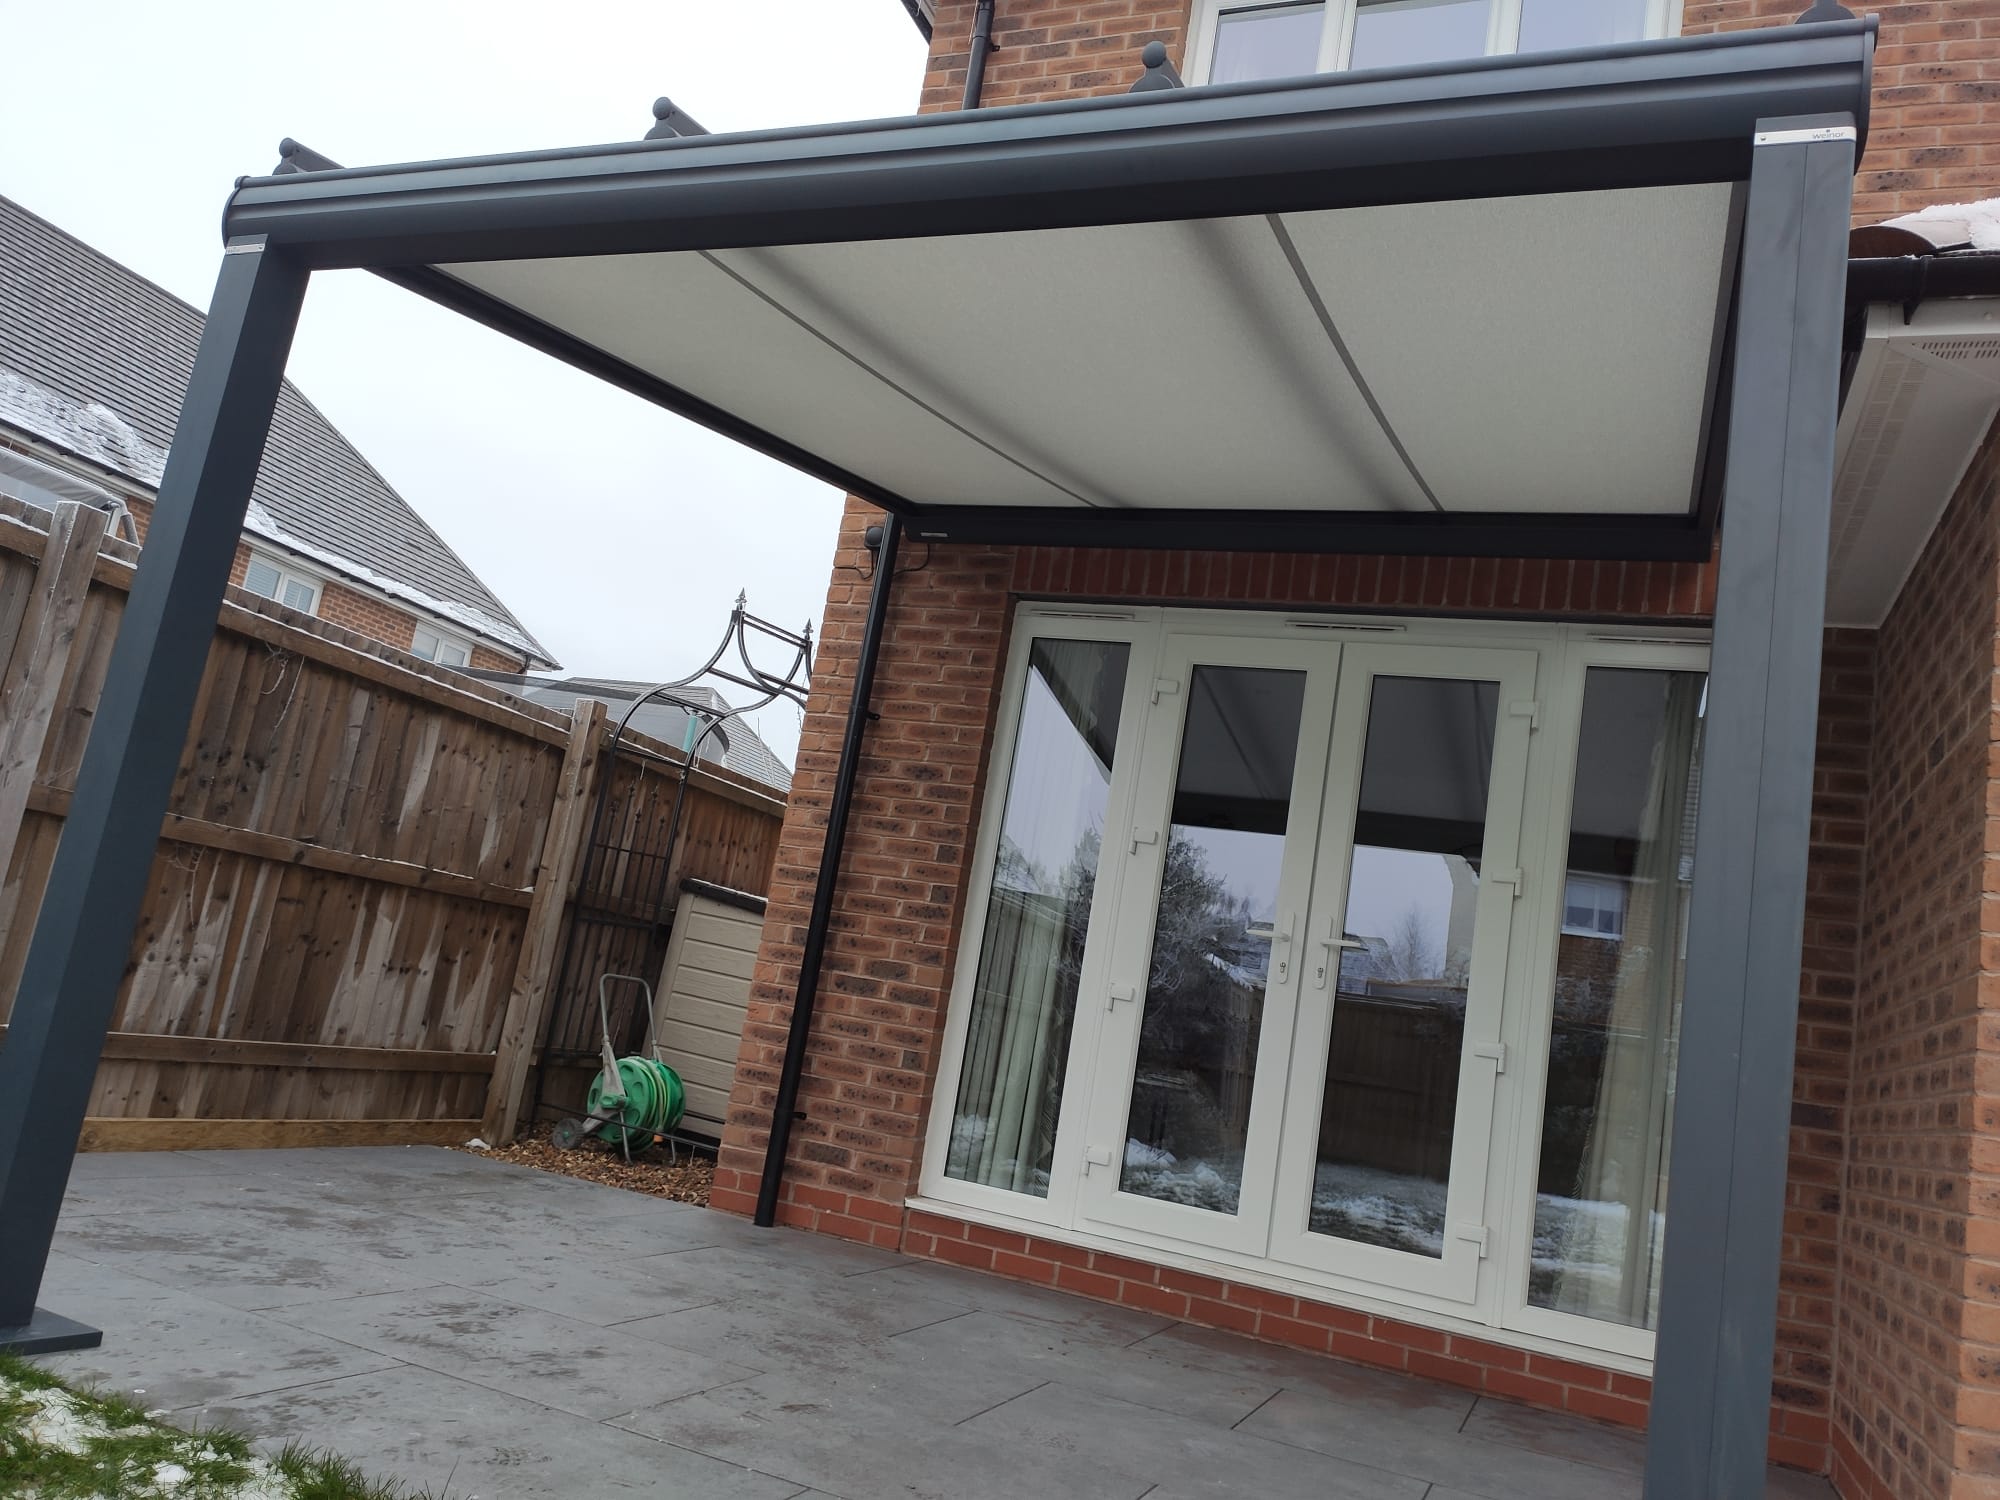 Glass verandas, patio verandas, verandas, Weinor, Chester, Cheshire,Patio Covers